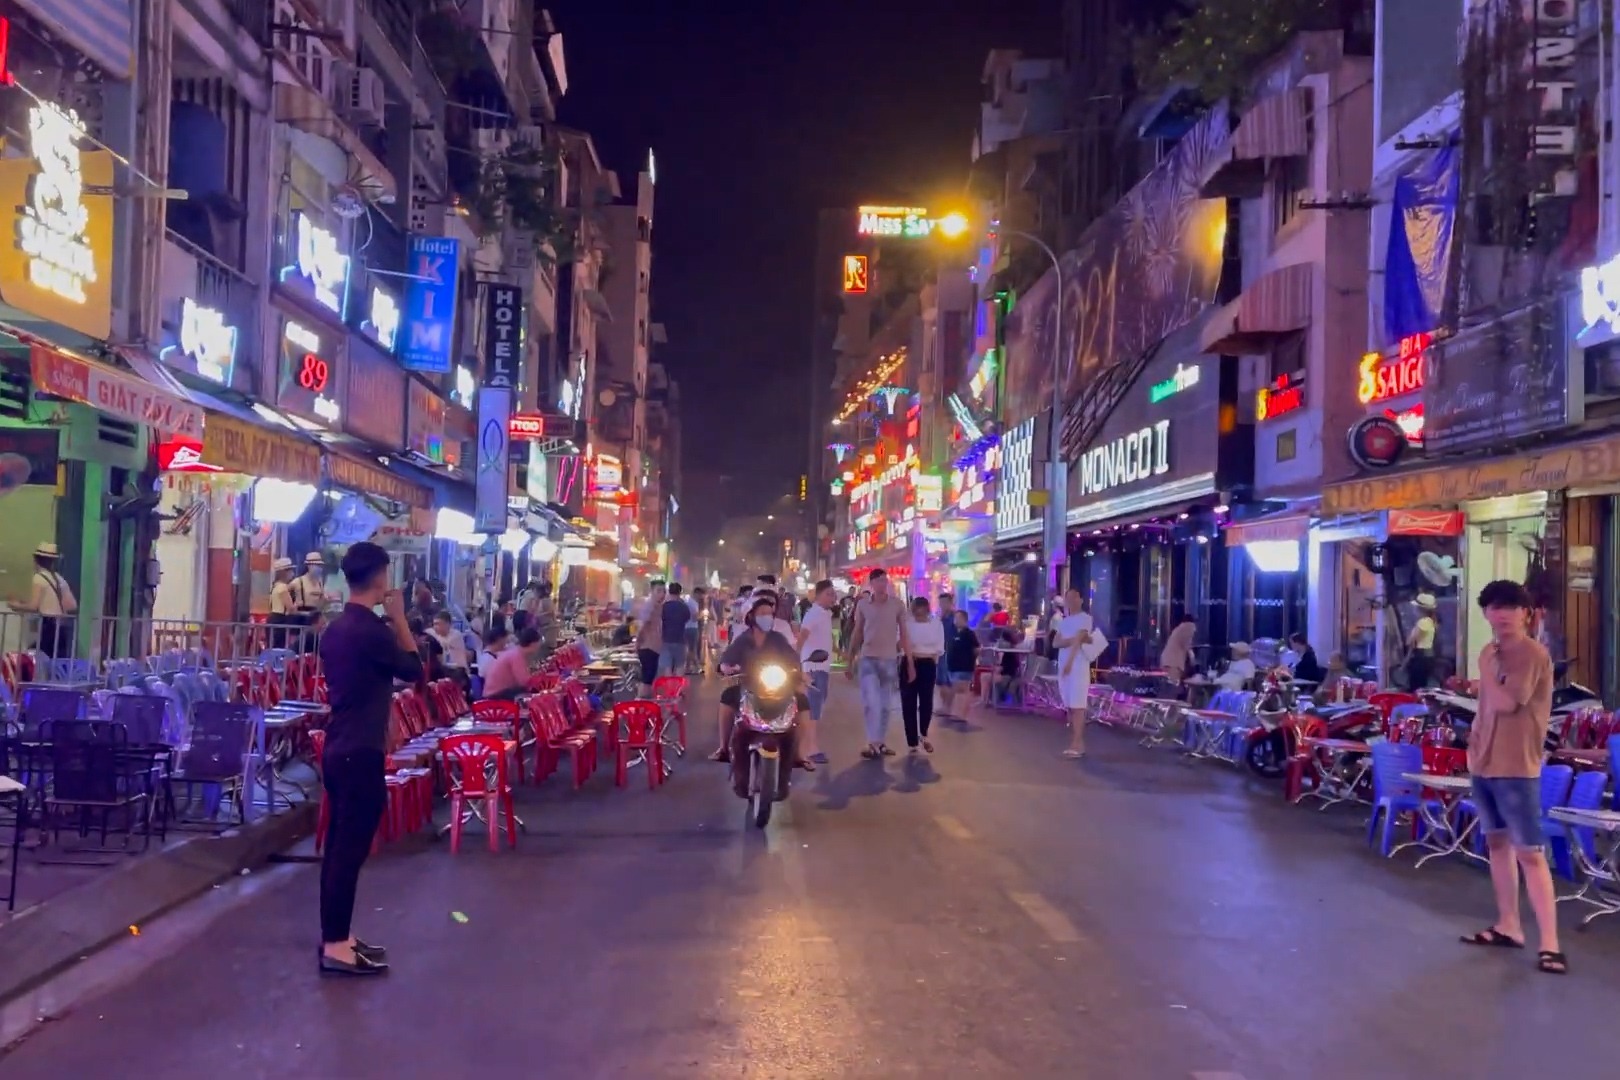 越南最热闹的一条街已不复之前的繁华酒吧老板街边争相拉客